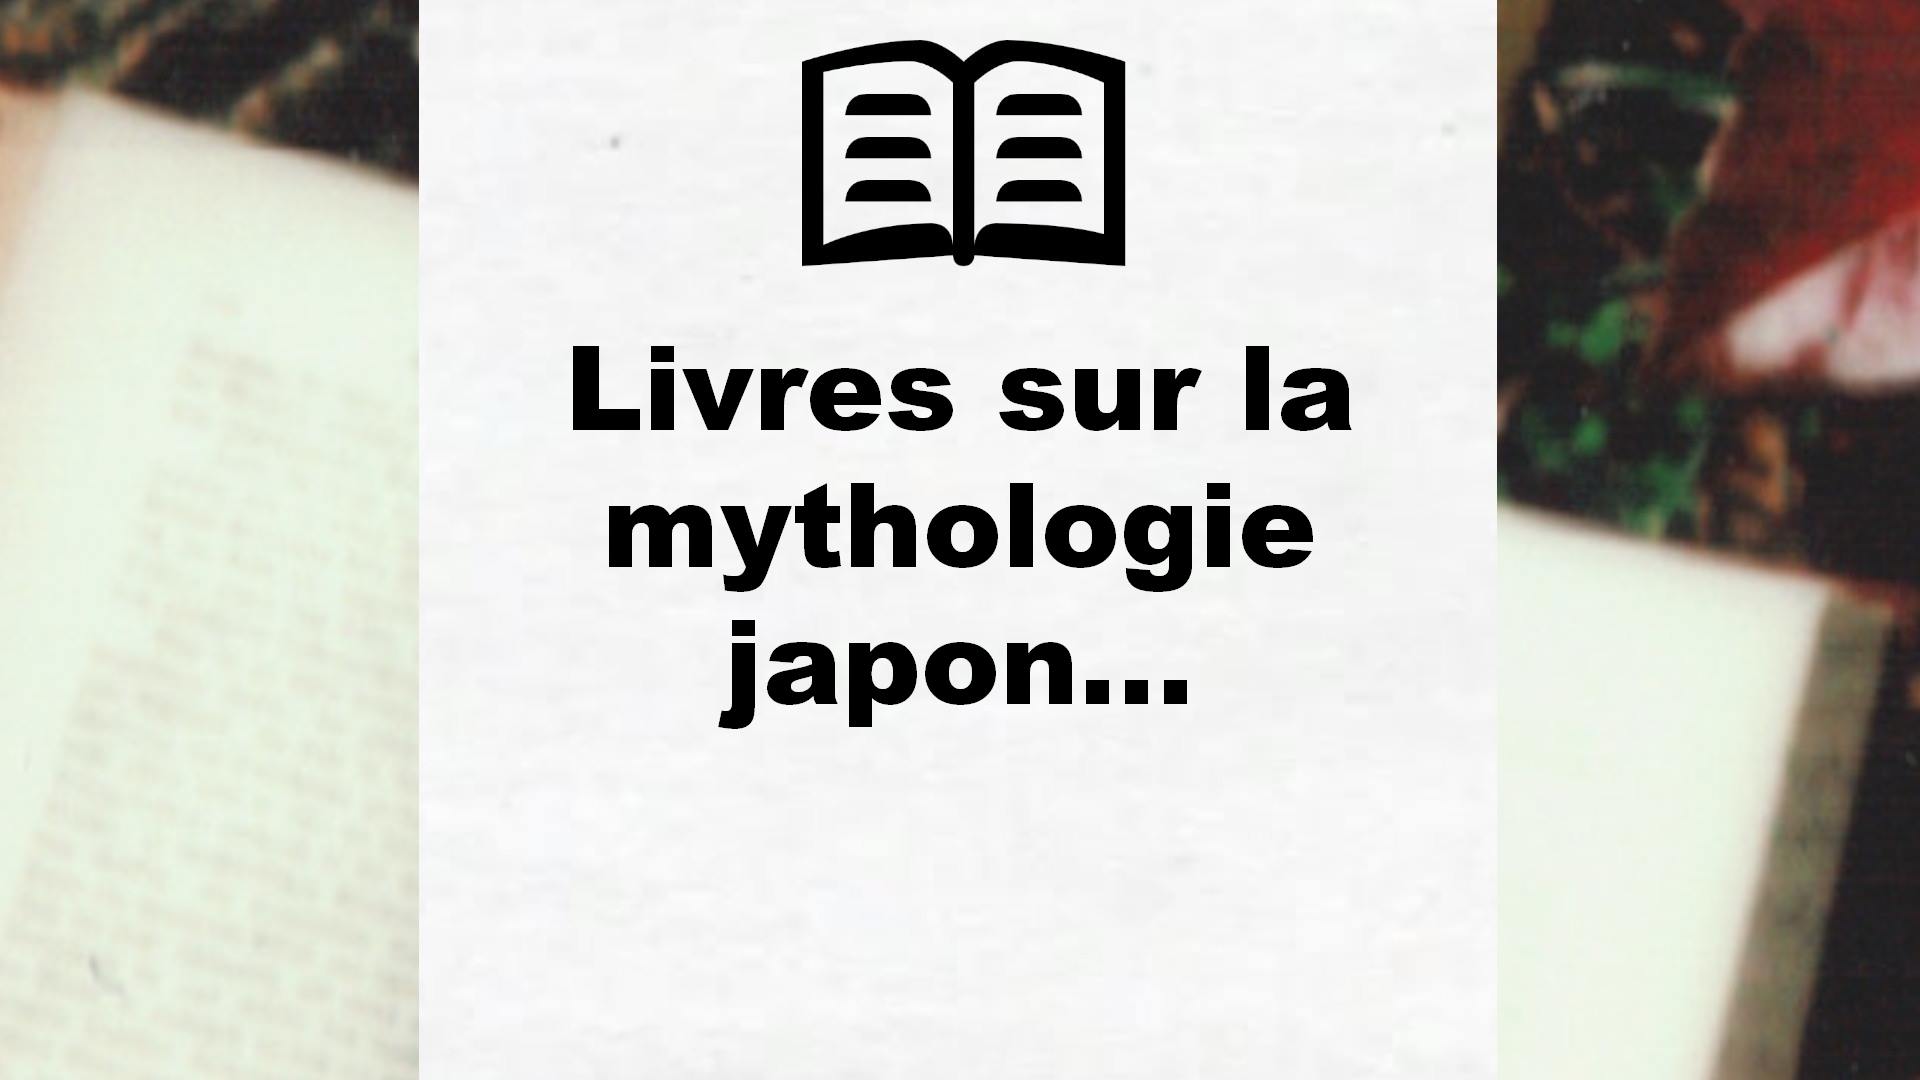 Livres sur la mythologie japonaise